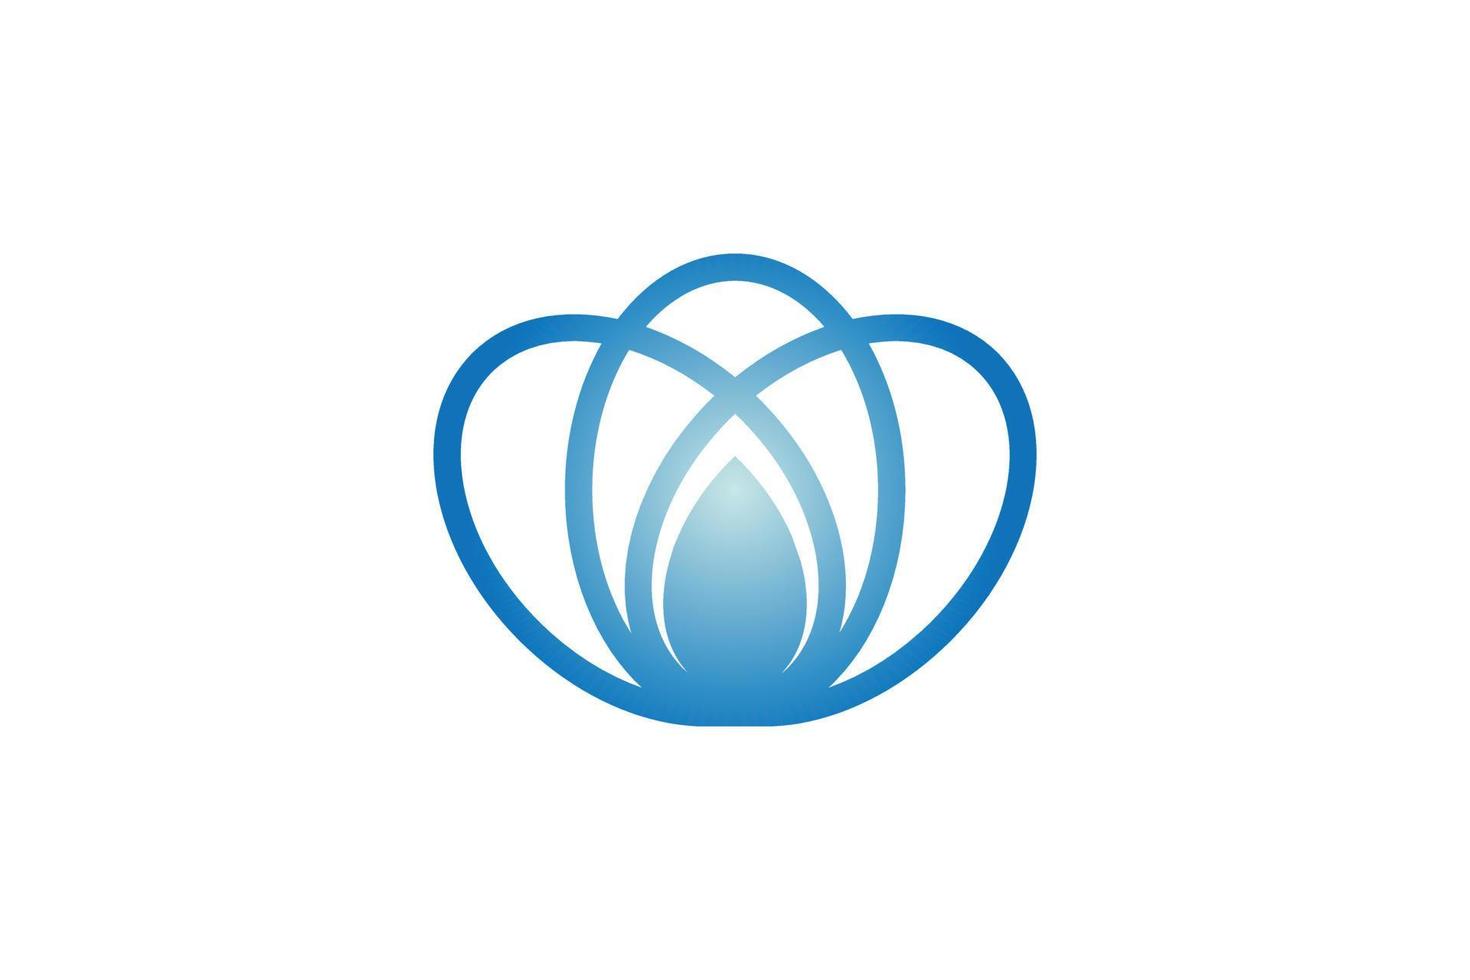 blauw water bloem logo ontwerp vector